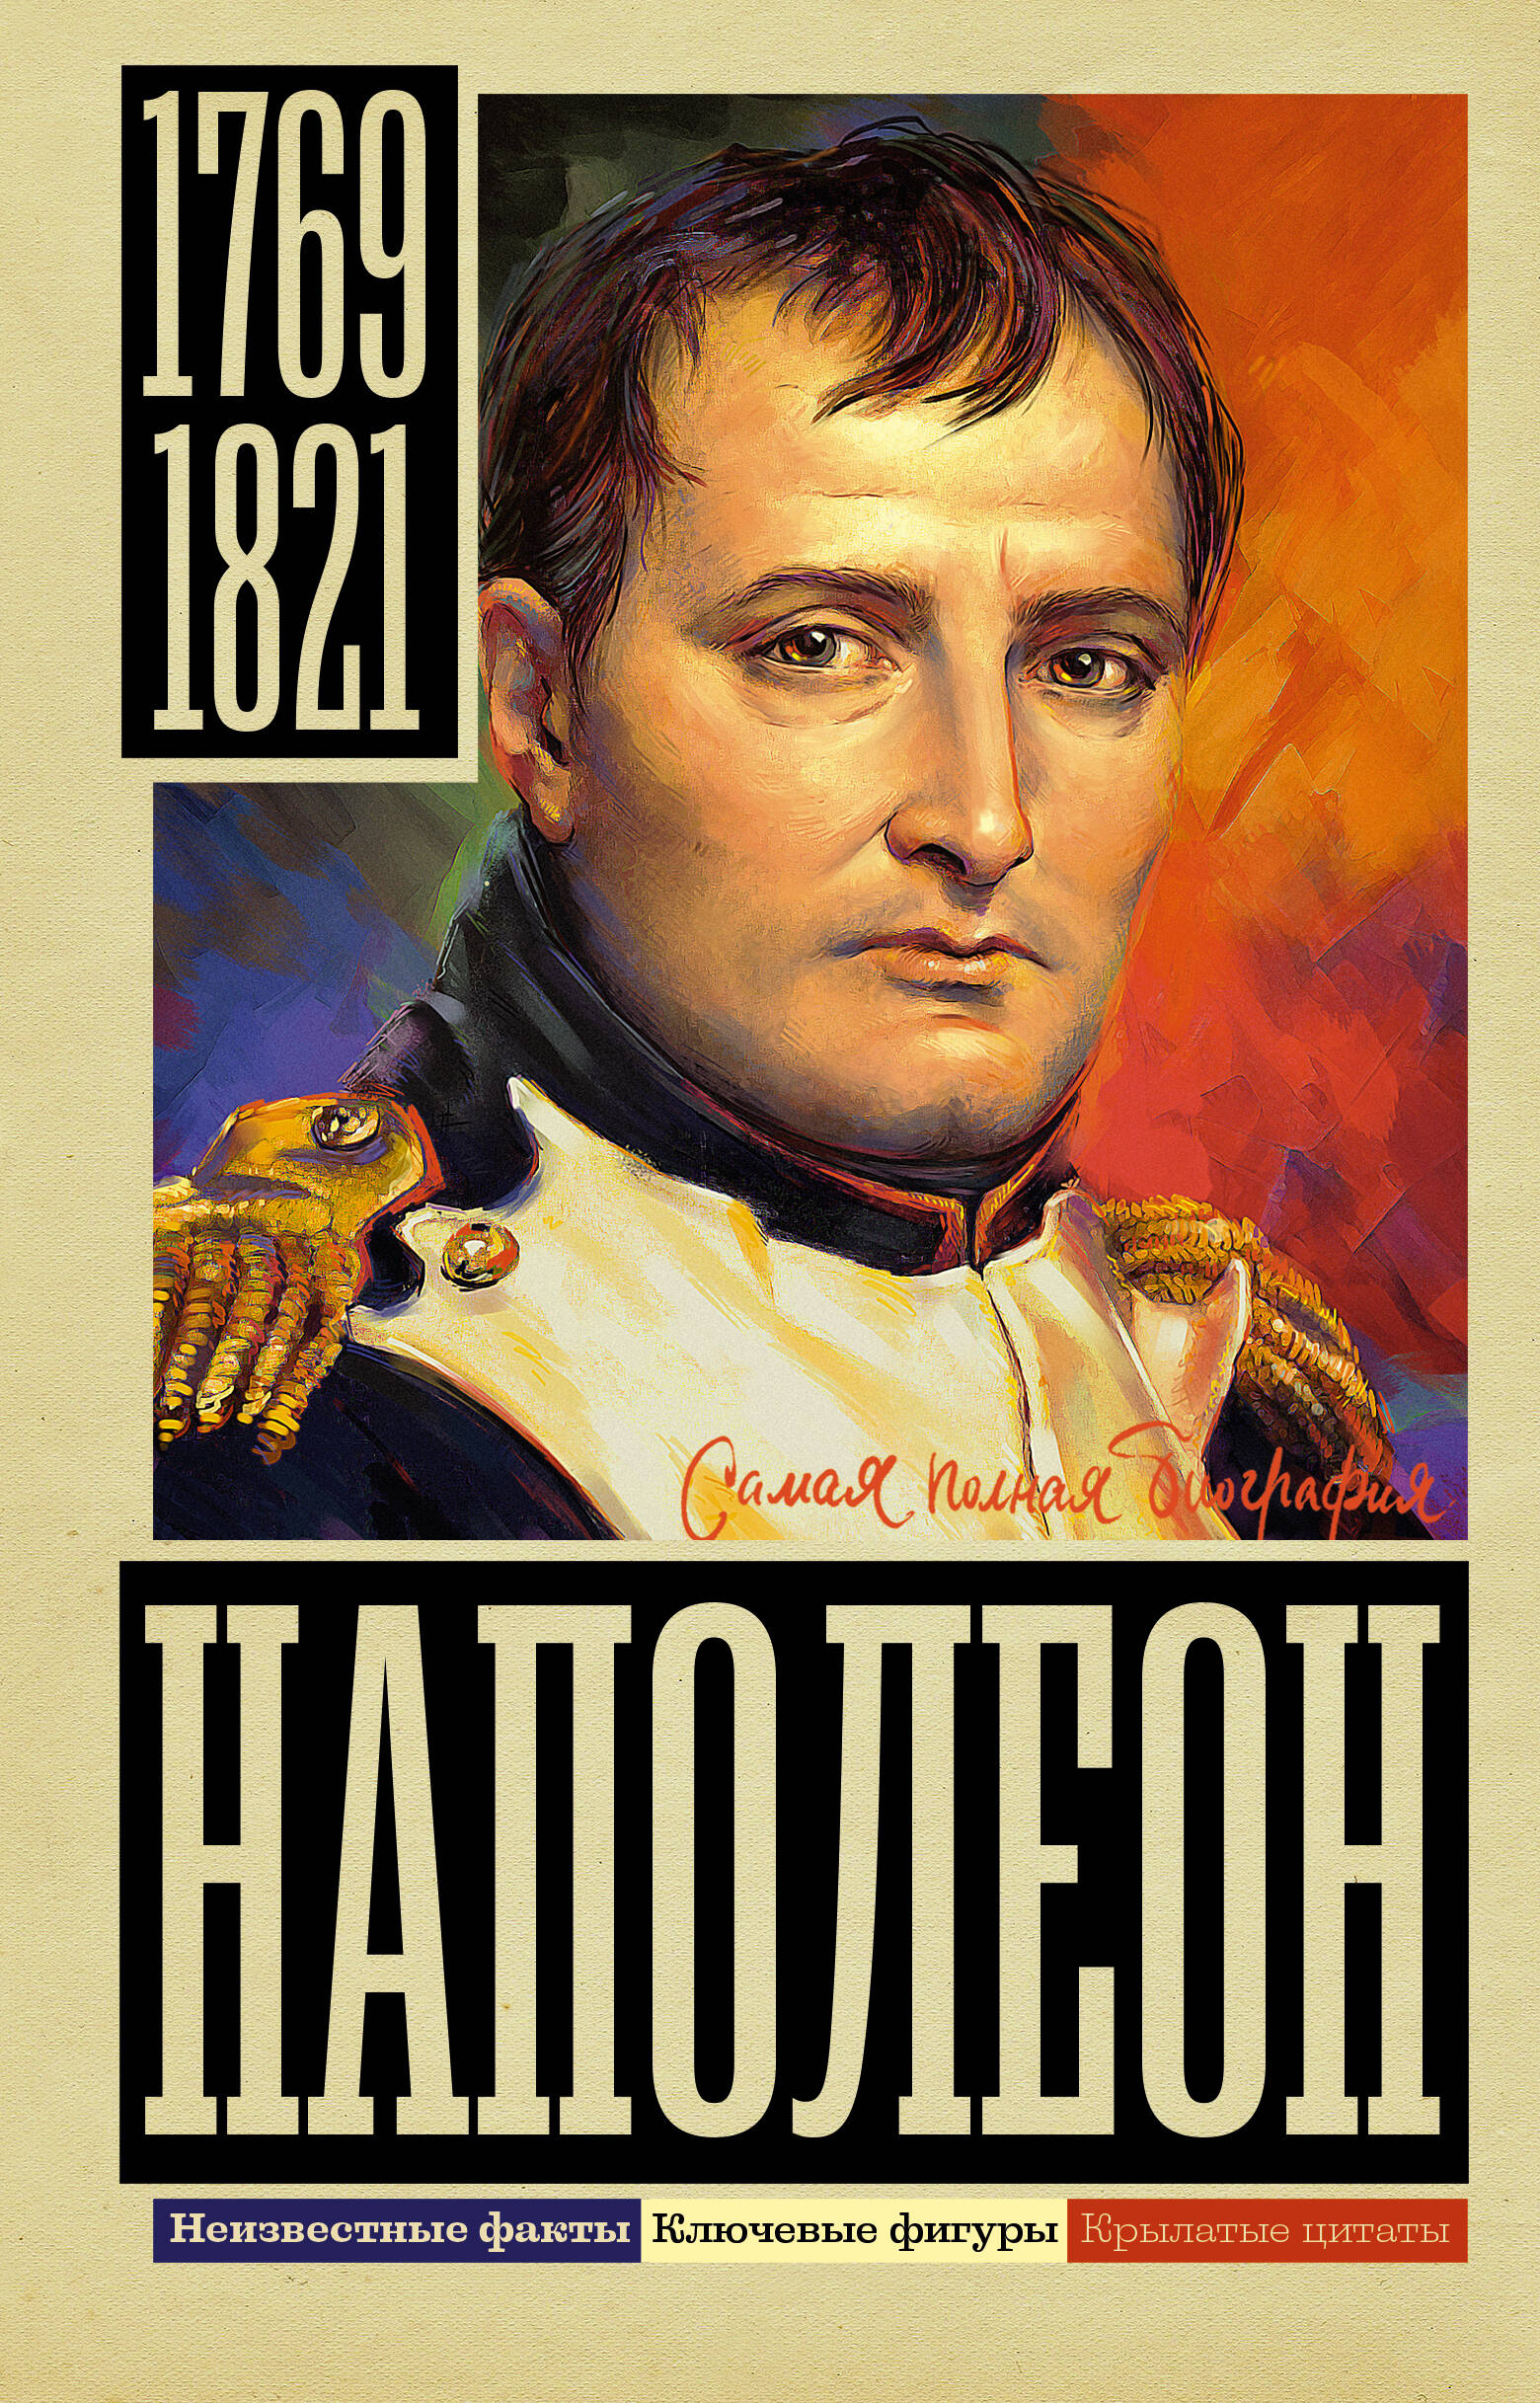 нечаев сергей юрьевич 1812 час гордости и славы Нечаев Сергей Юрьевич Наполеон